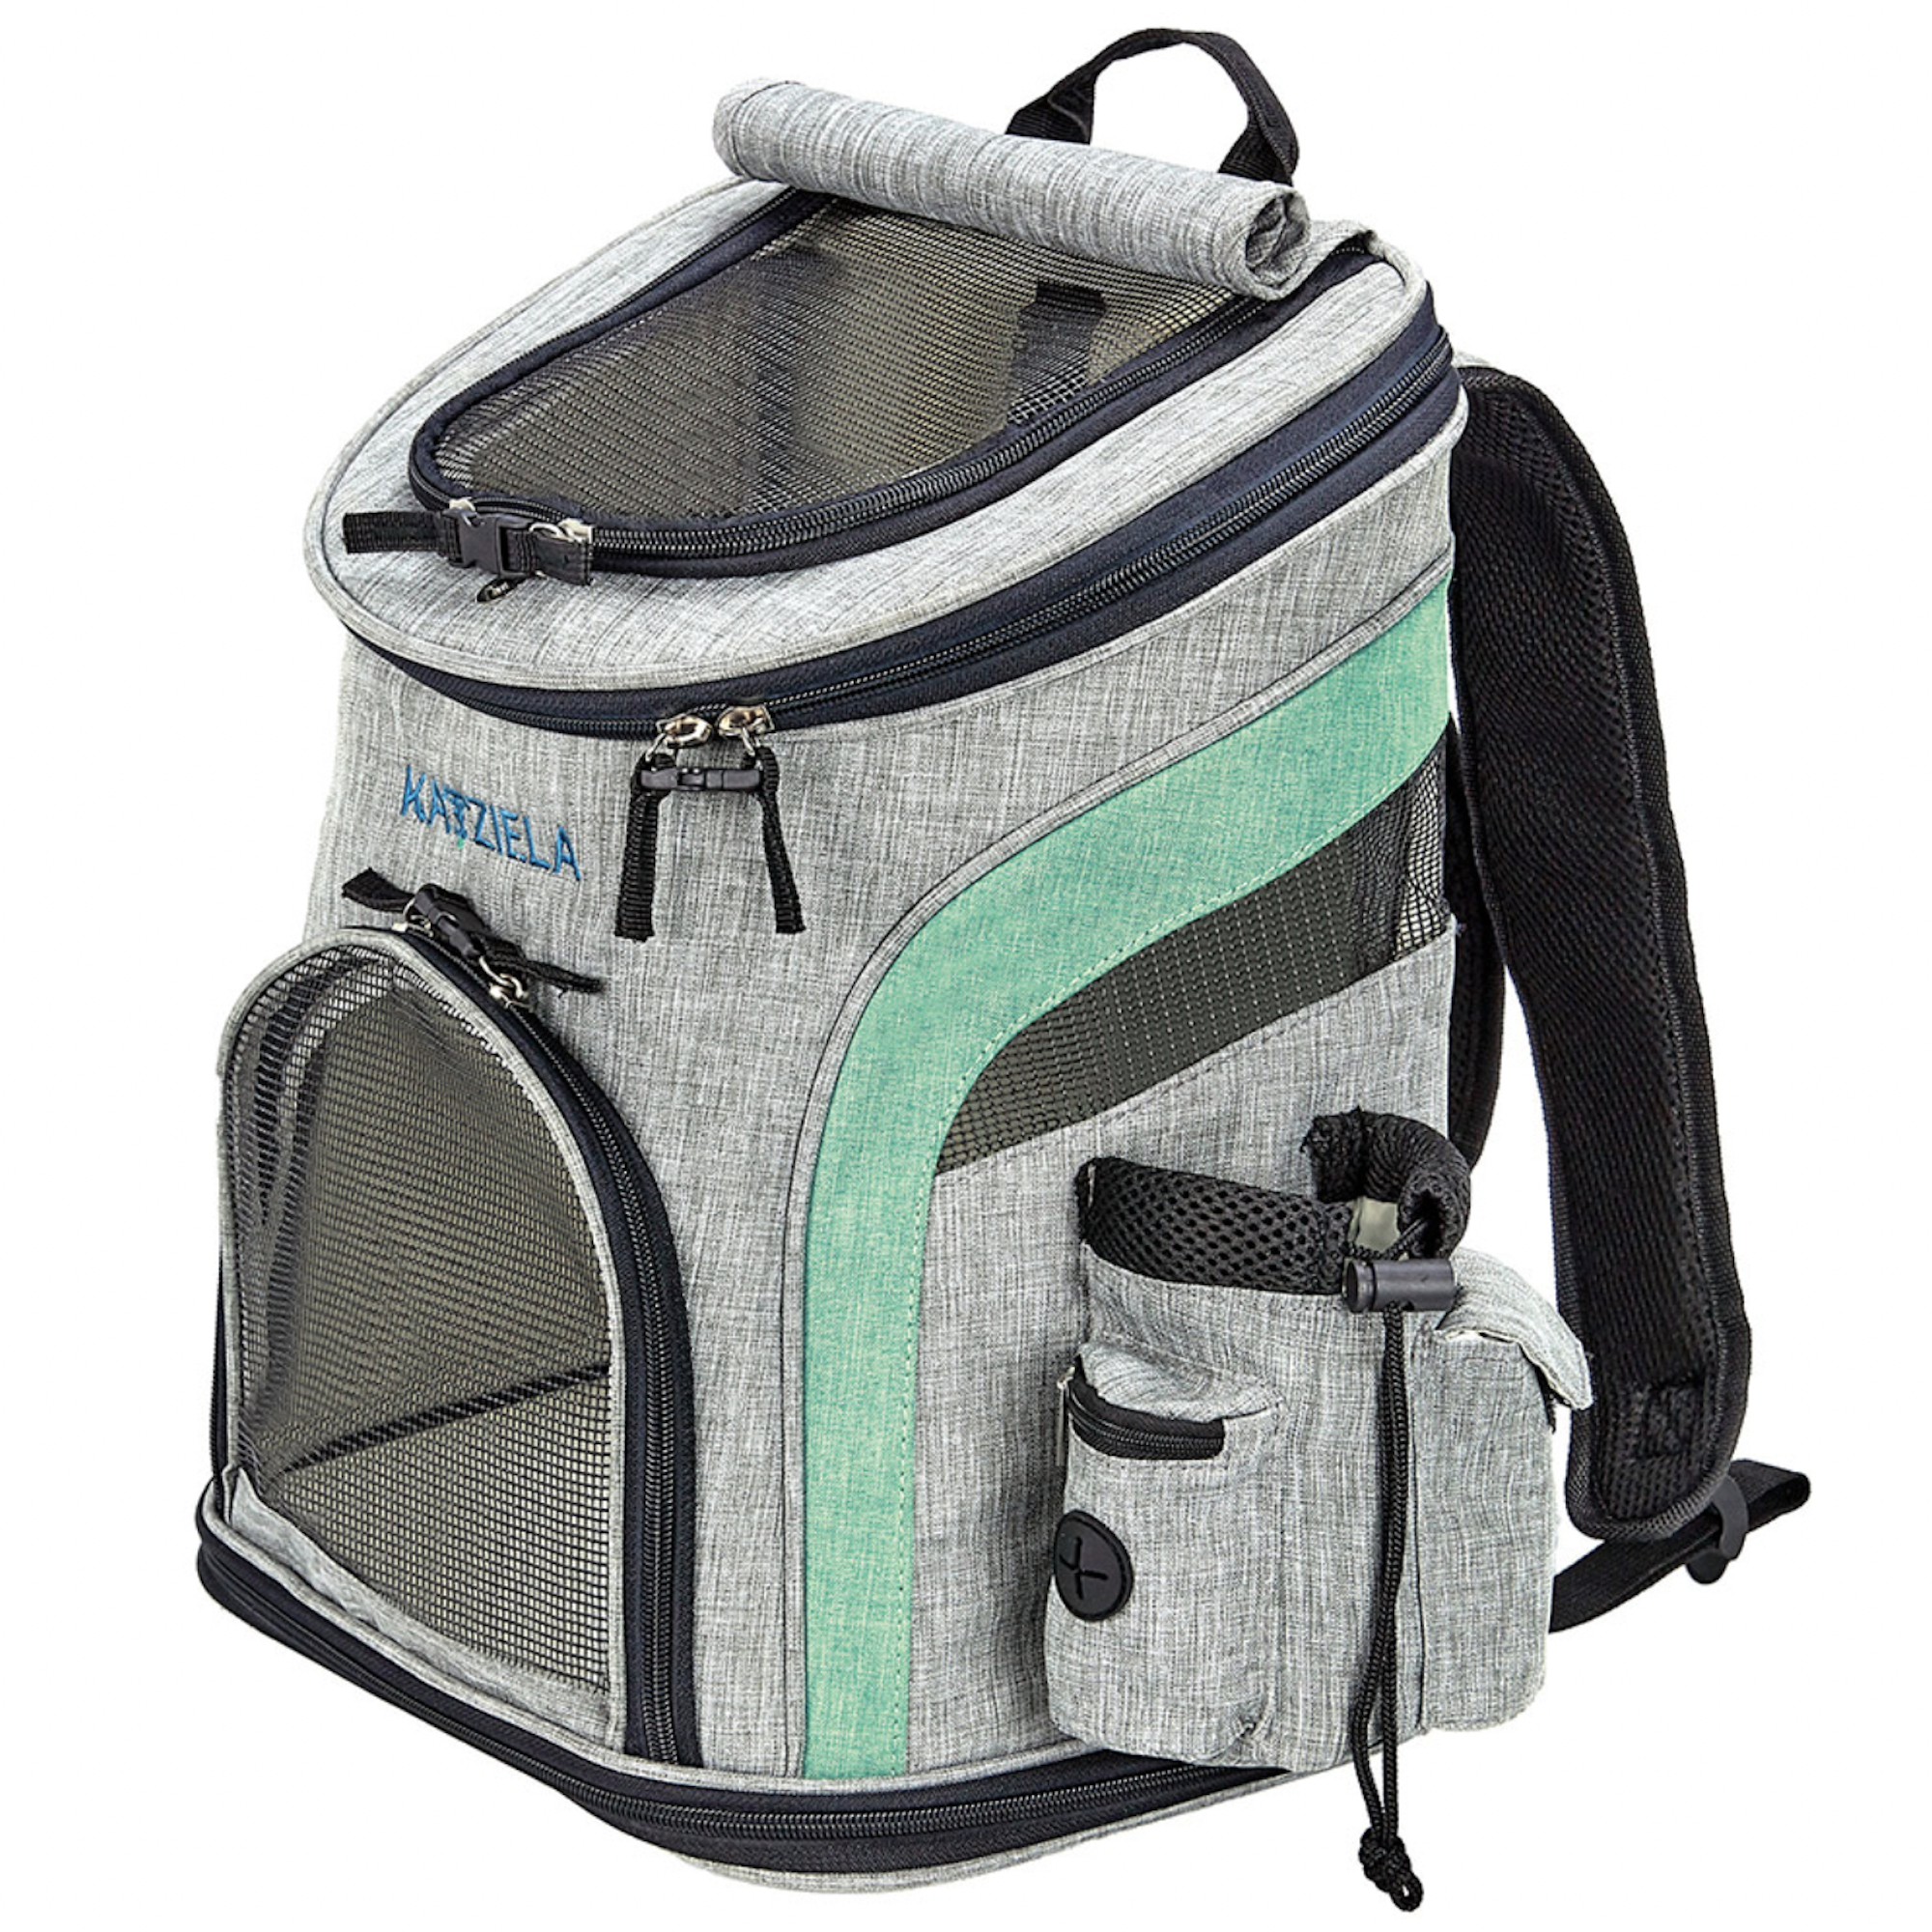 Katziela Voyager Pet Backpack Carrier - Green